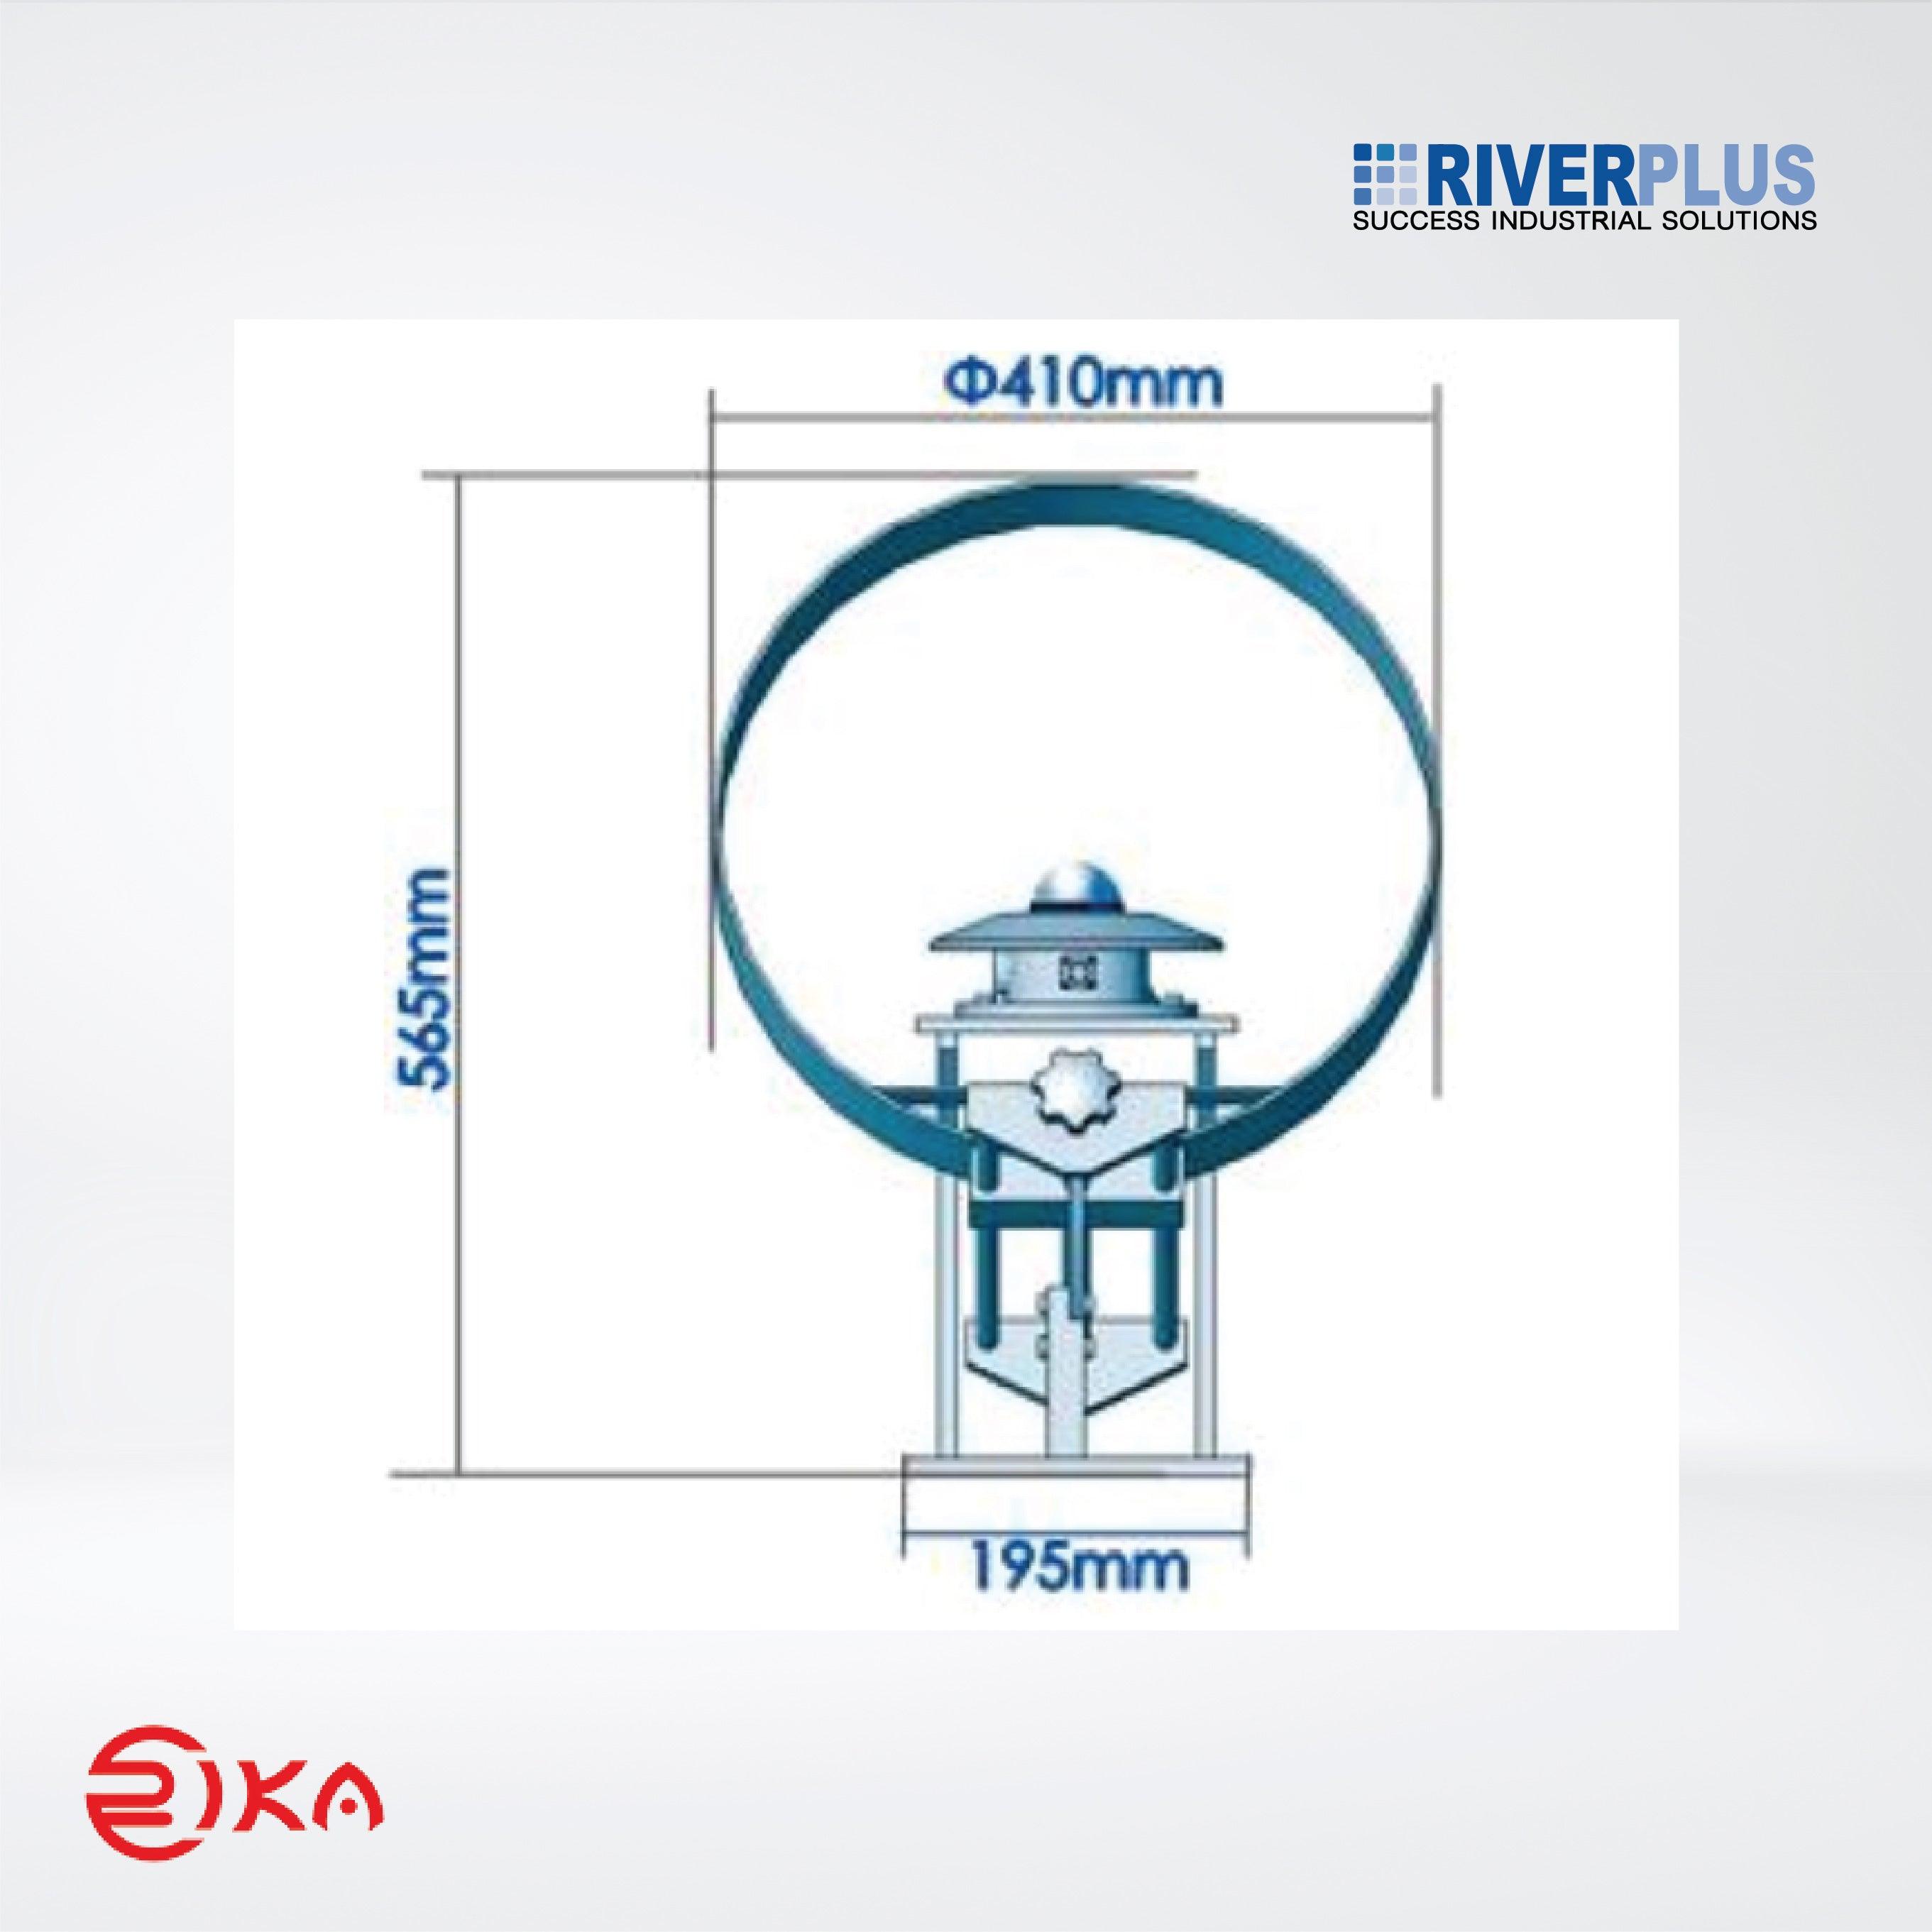 RK200-09 Scattering Radiometer - Riverplus